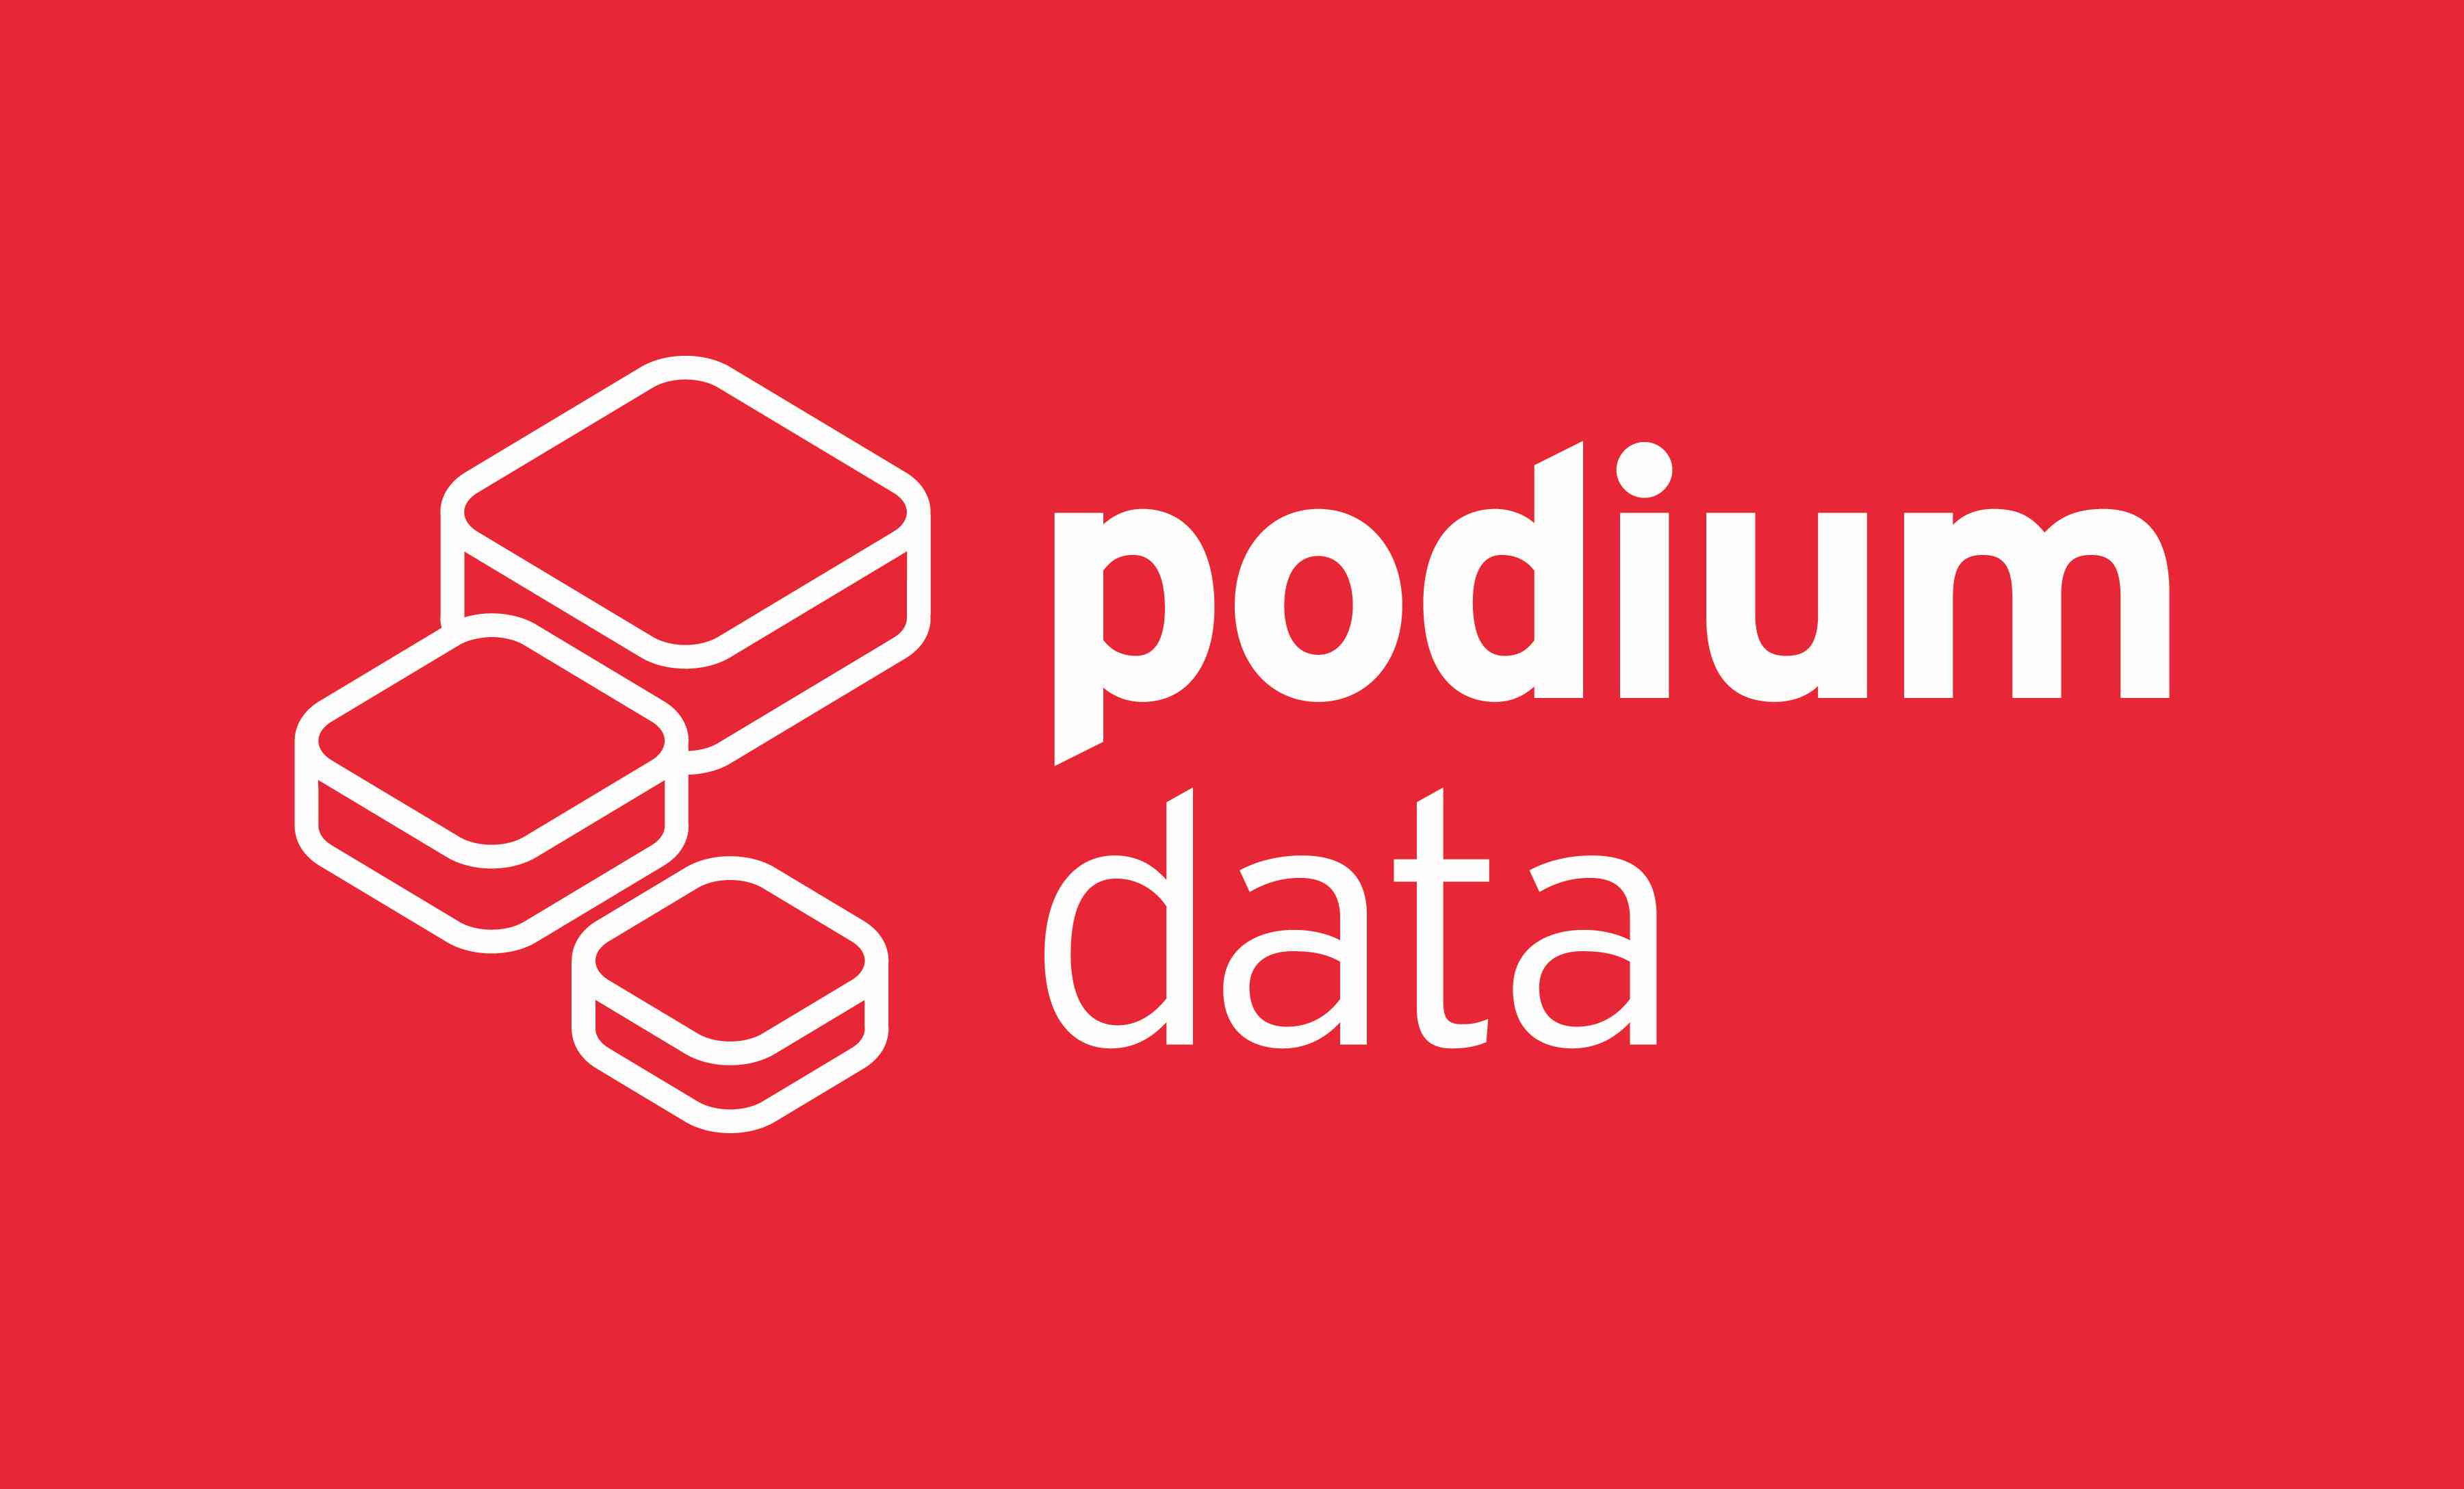 Podium Data Forms Ex